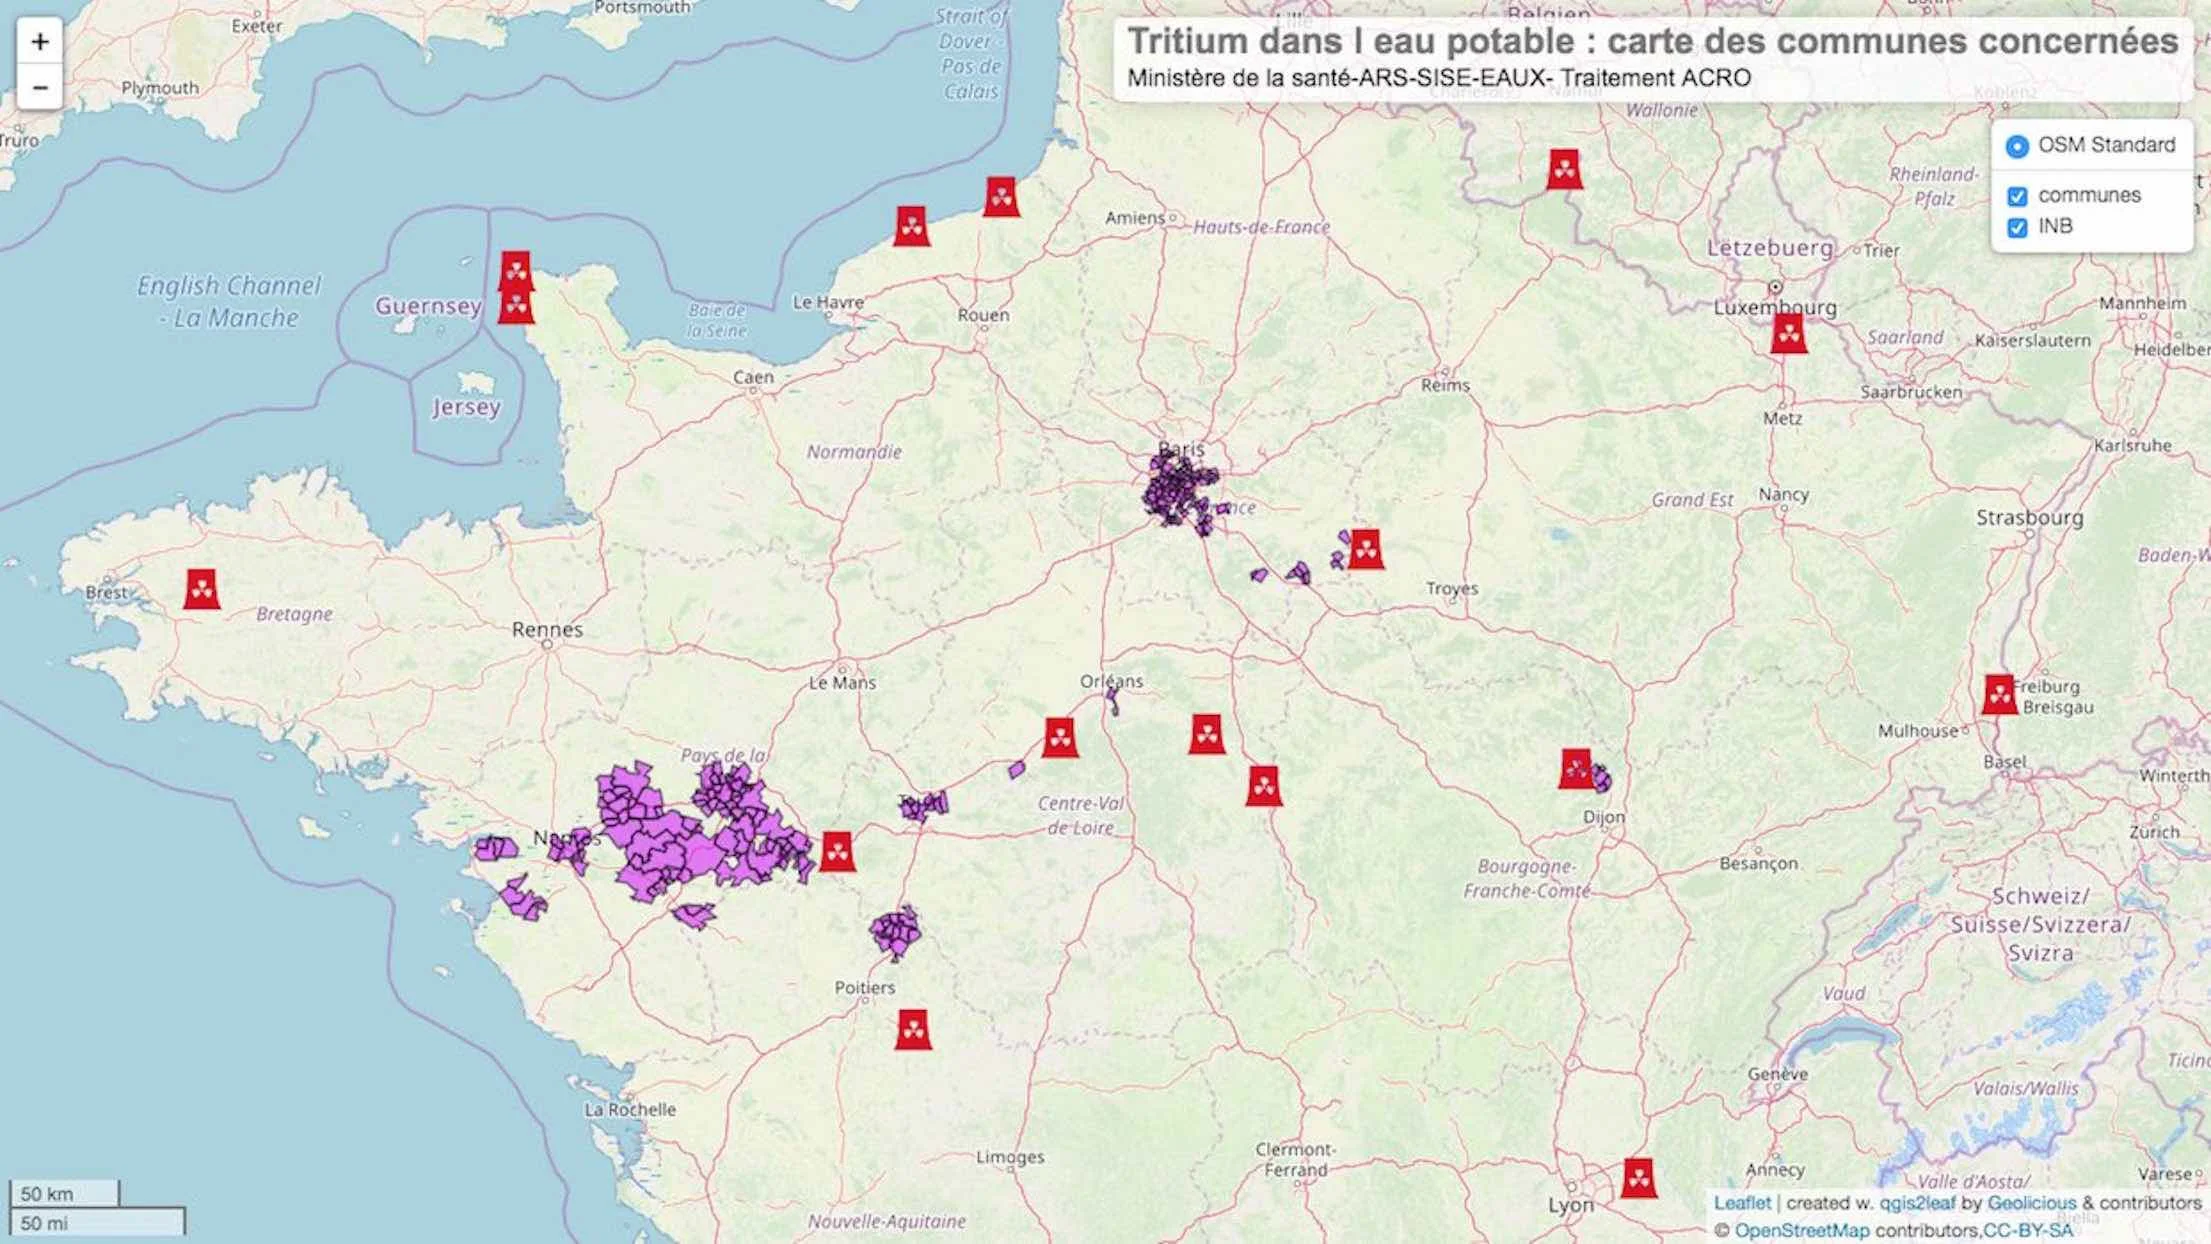 Tritium : une contamination radioactive de l’eau potable touche des millions de Français